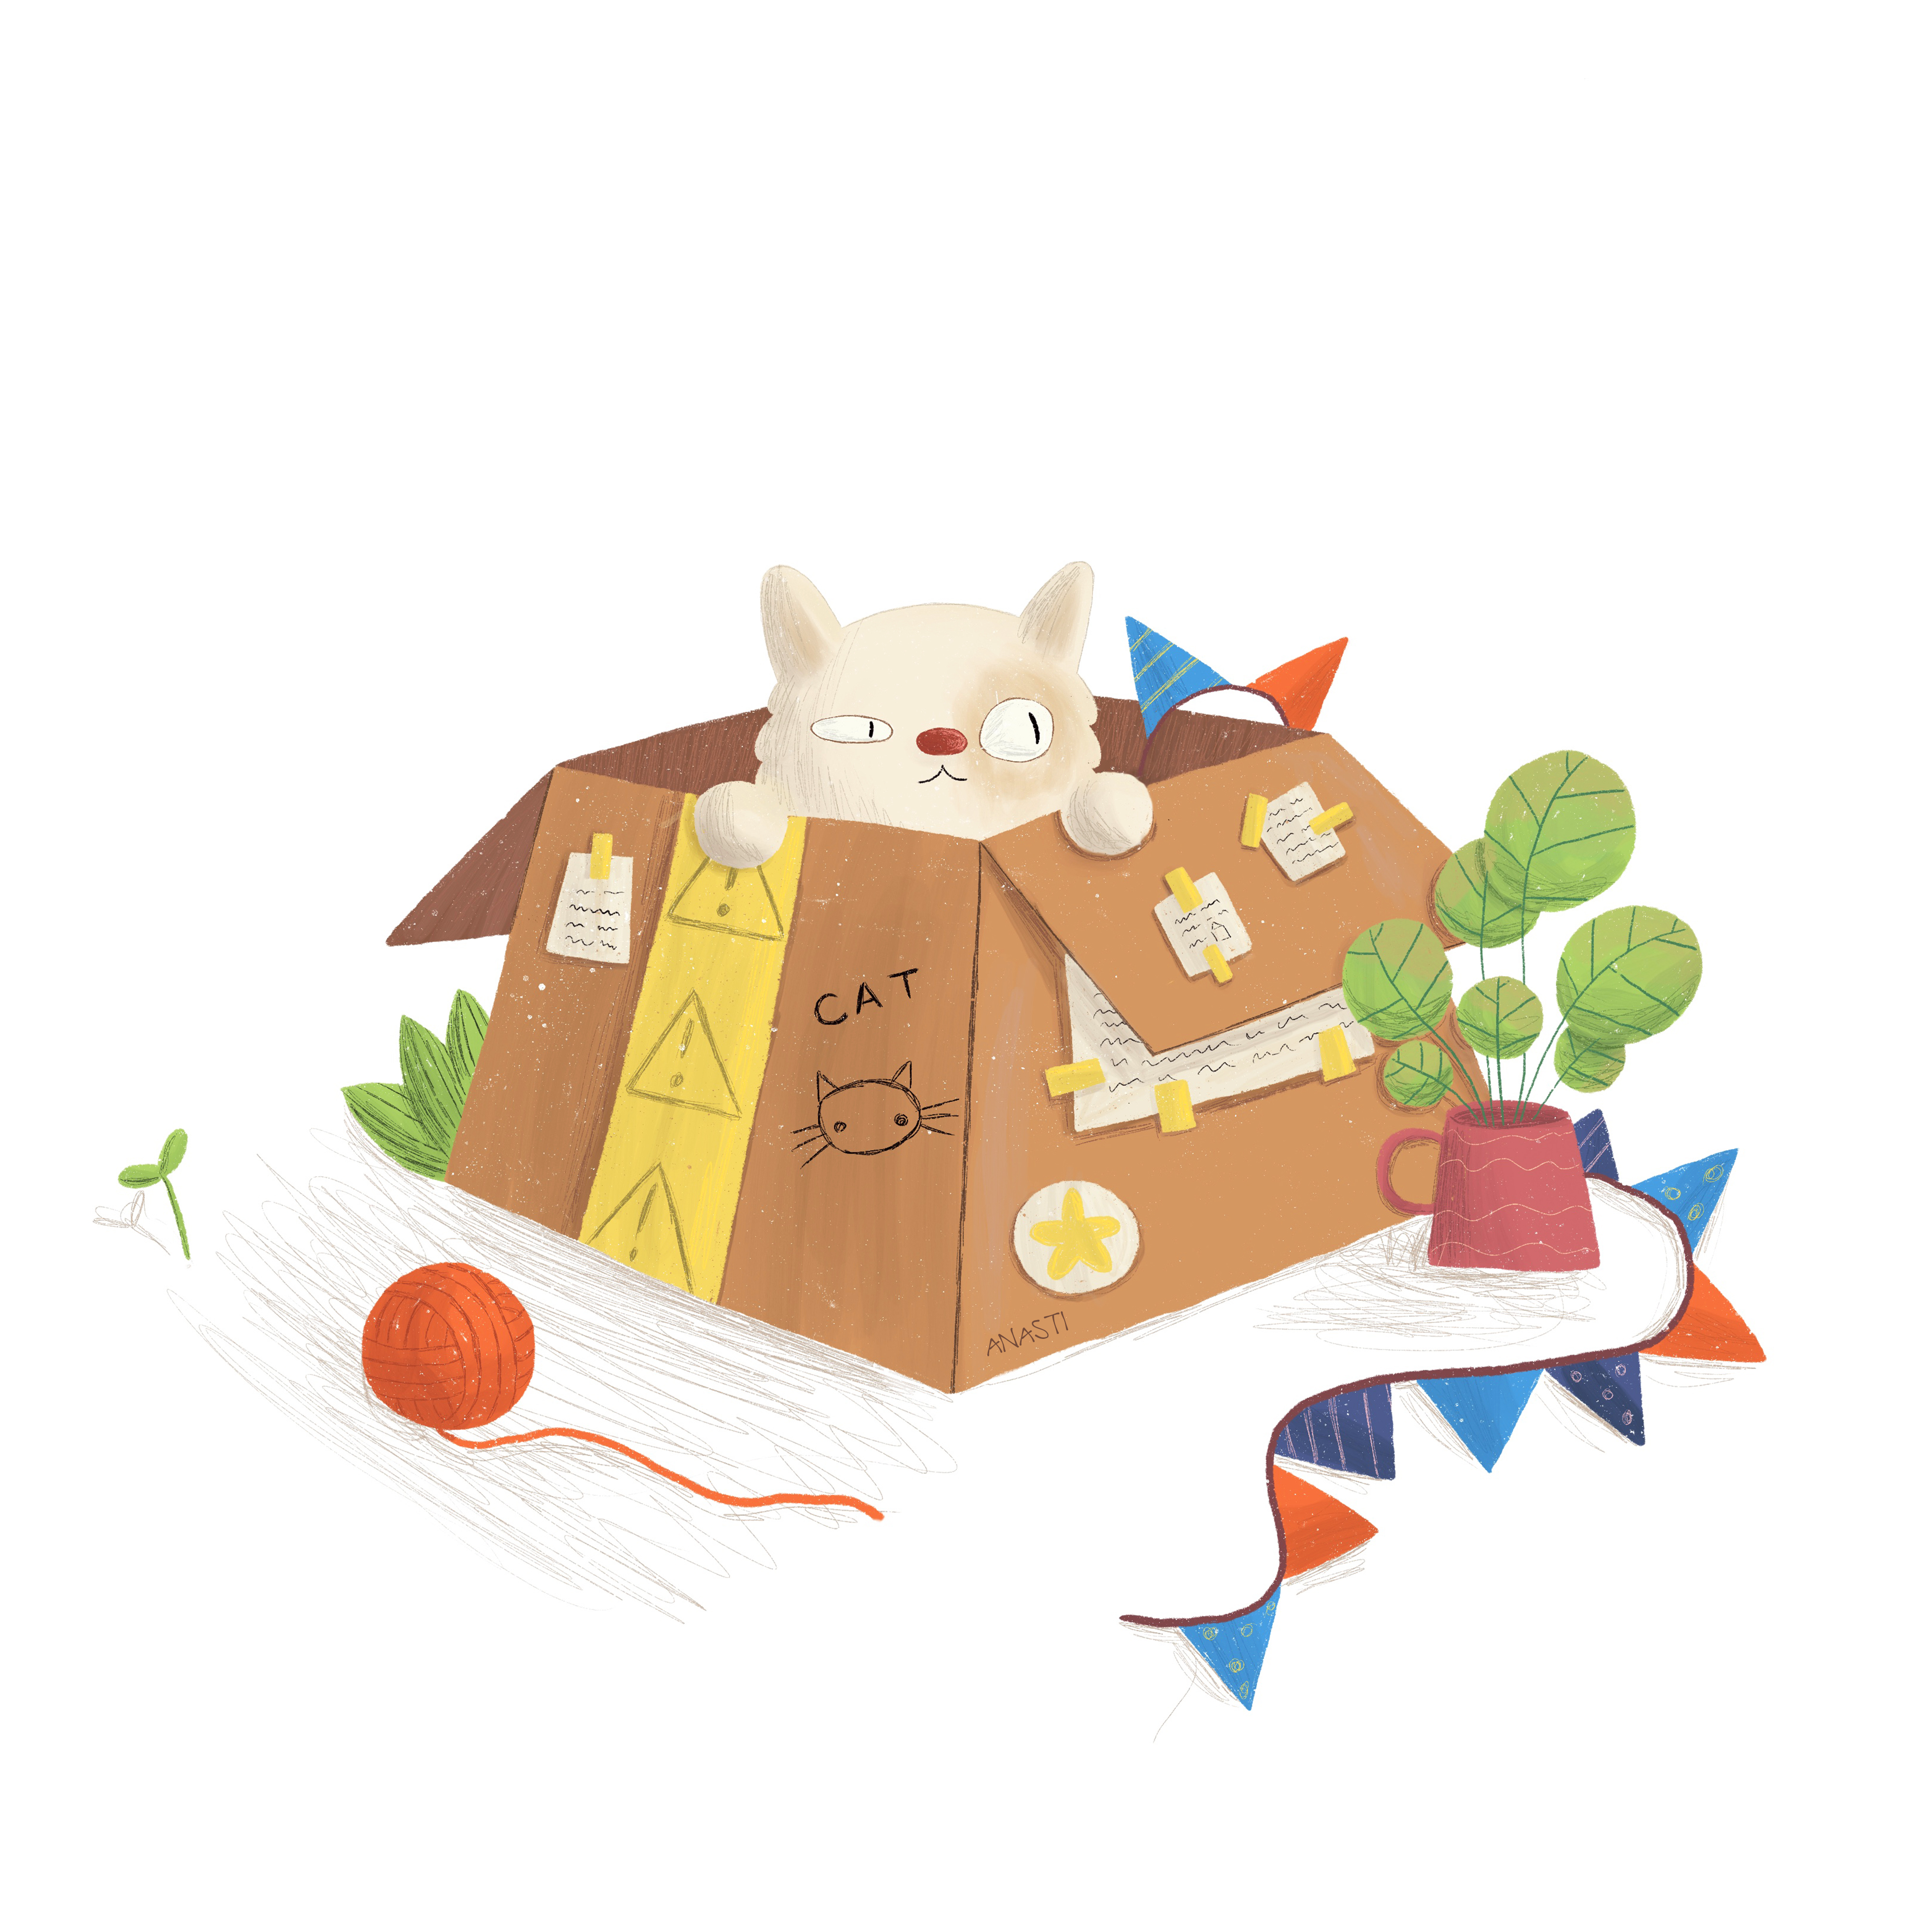 Cat in box 2